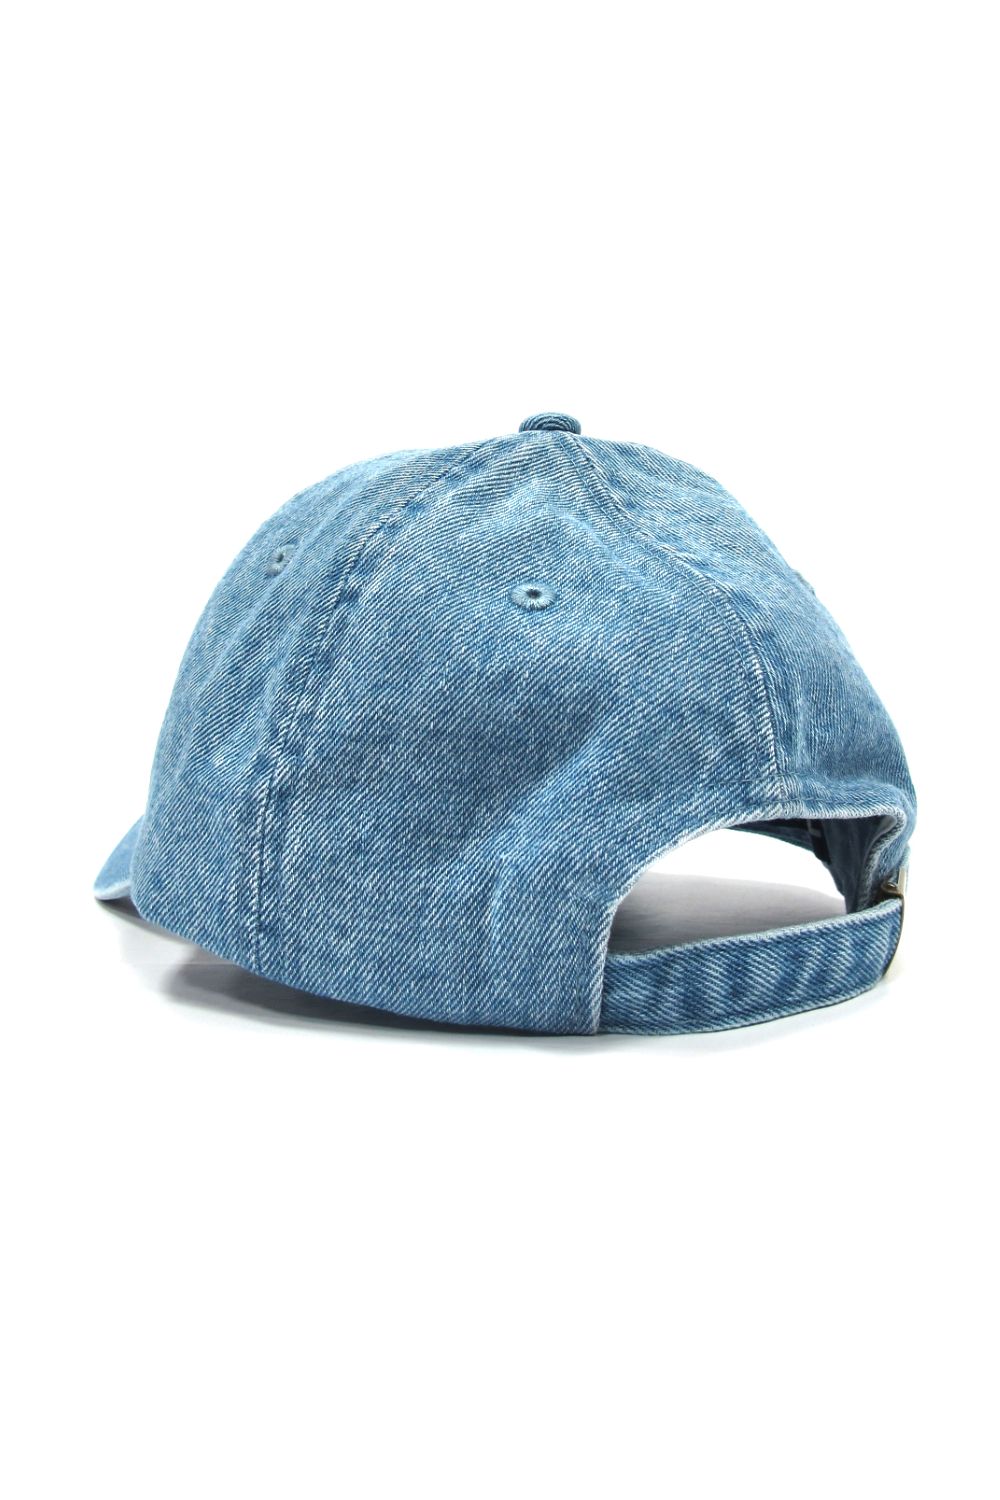 DENIM CAP (LIGHT BLUE) / ボックスロゴ デニムキャップ - フリーサイズ